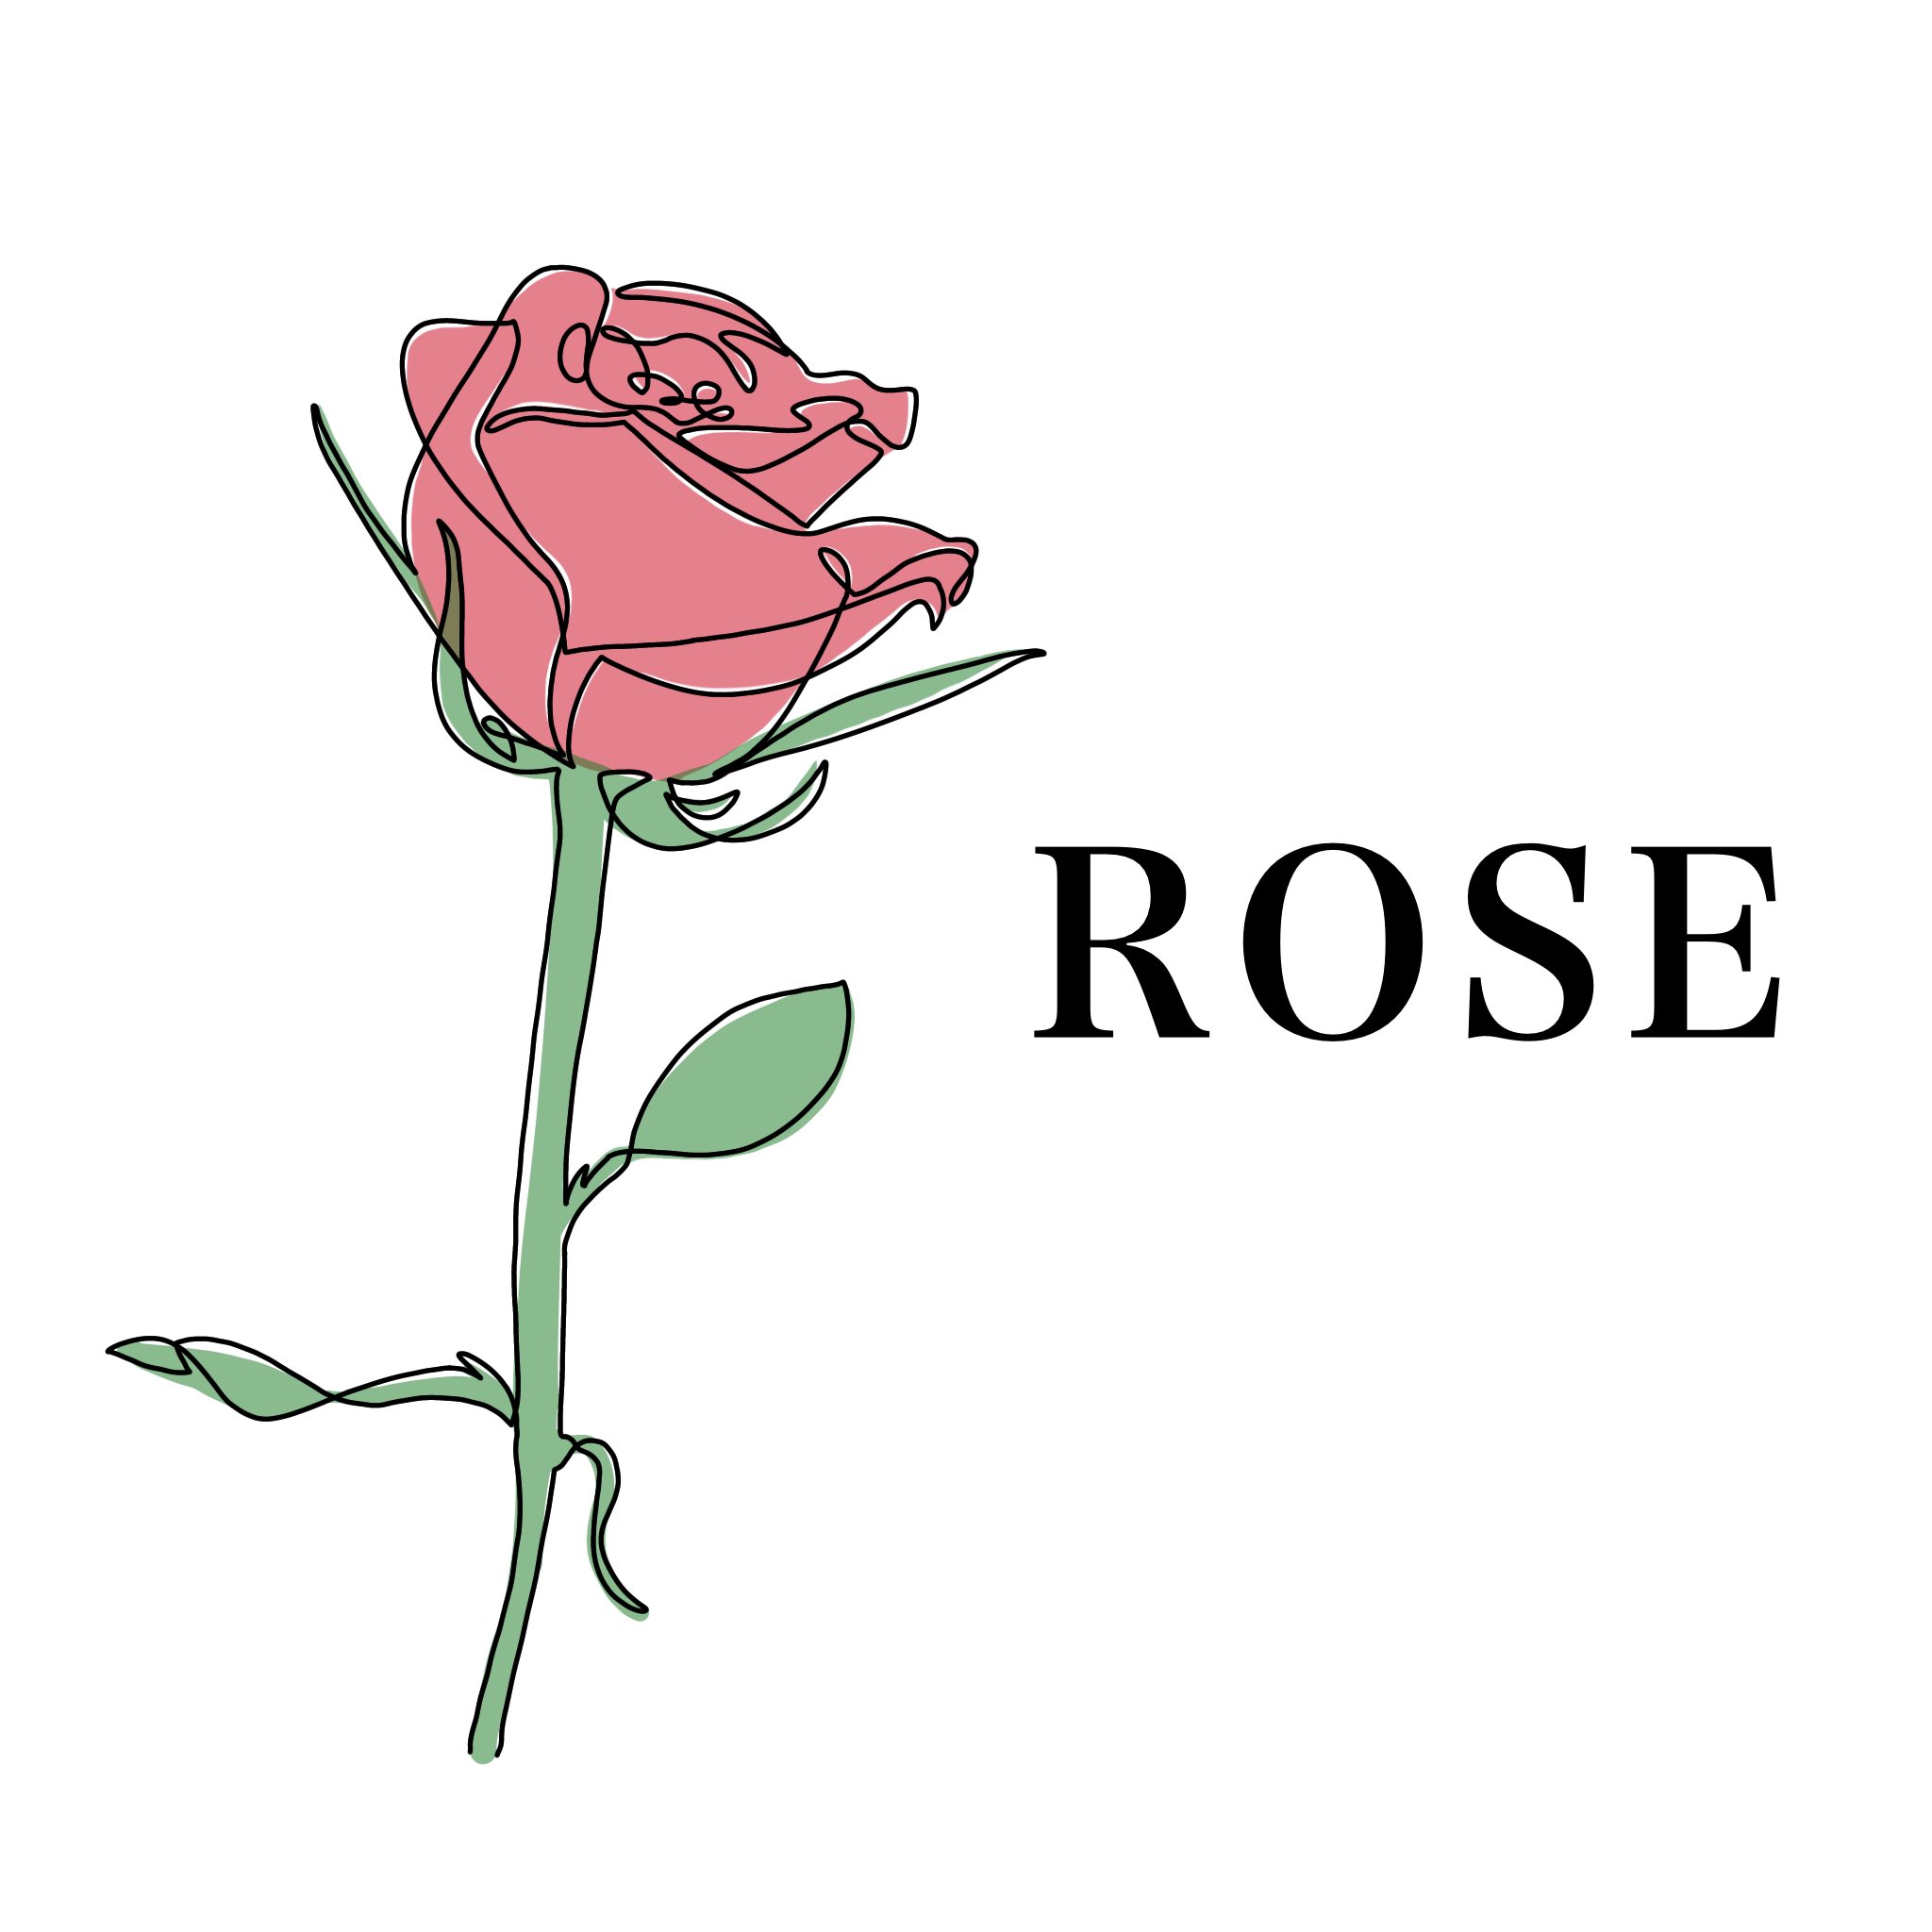 Twitter 上的 りんりん 一筆書き風 Rose 無断転載禁止 保存はご自由にどうぞ 線画 一筆書き 一筆描き イラスト シンプル おしゃれ 薔薇 バラ Rose 絵描きさんと繋がりたい イラスト好きな人と繋がりたい